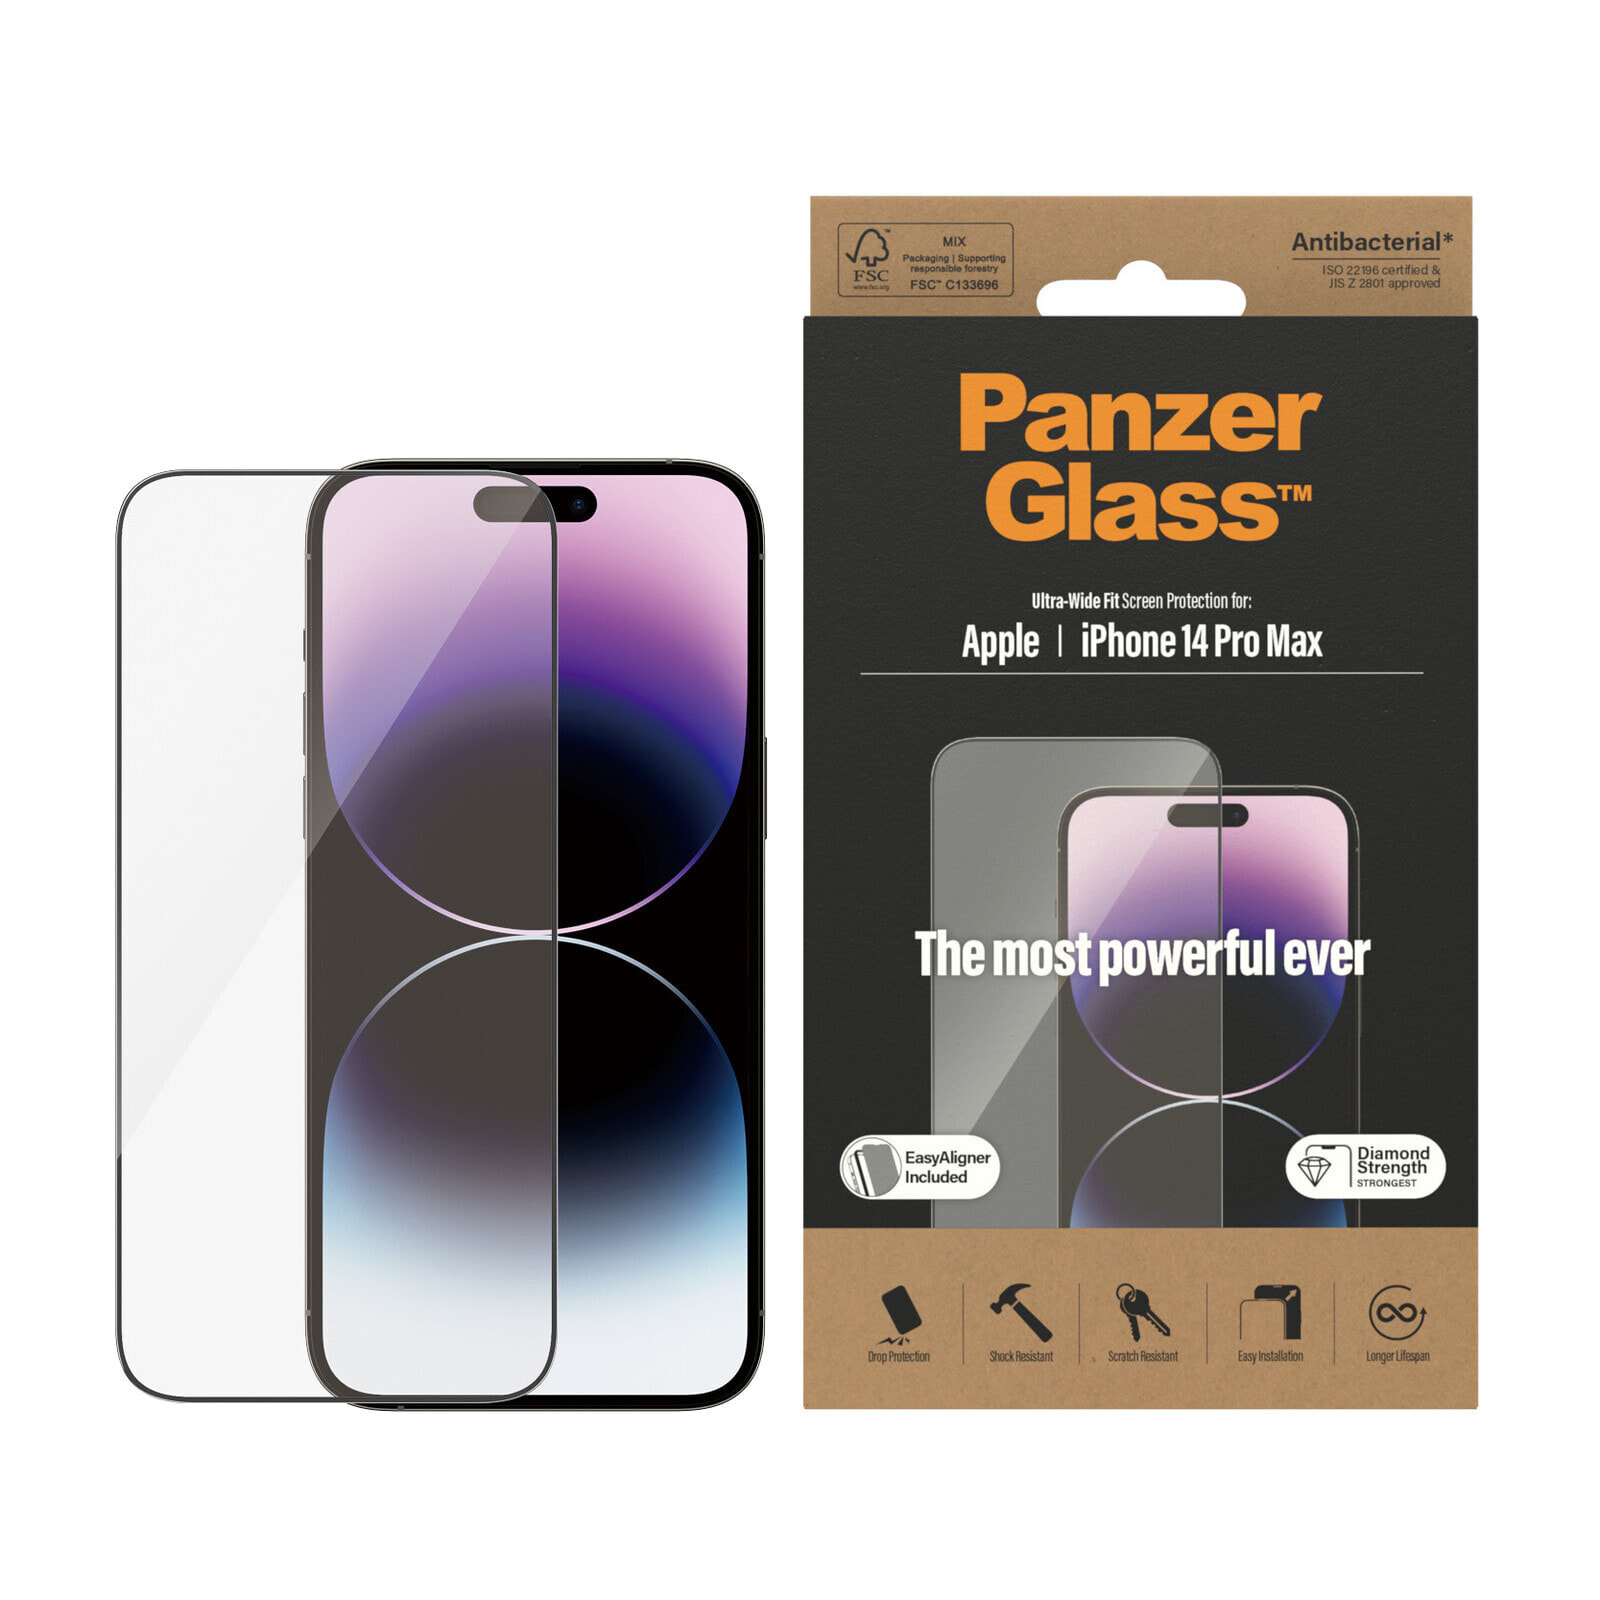 PanzerGlass Ultra-Wide Fit Apple iPhone Прозрачная защитная пленка 1 шт 2786